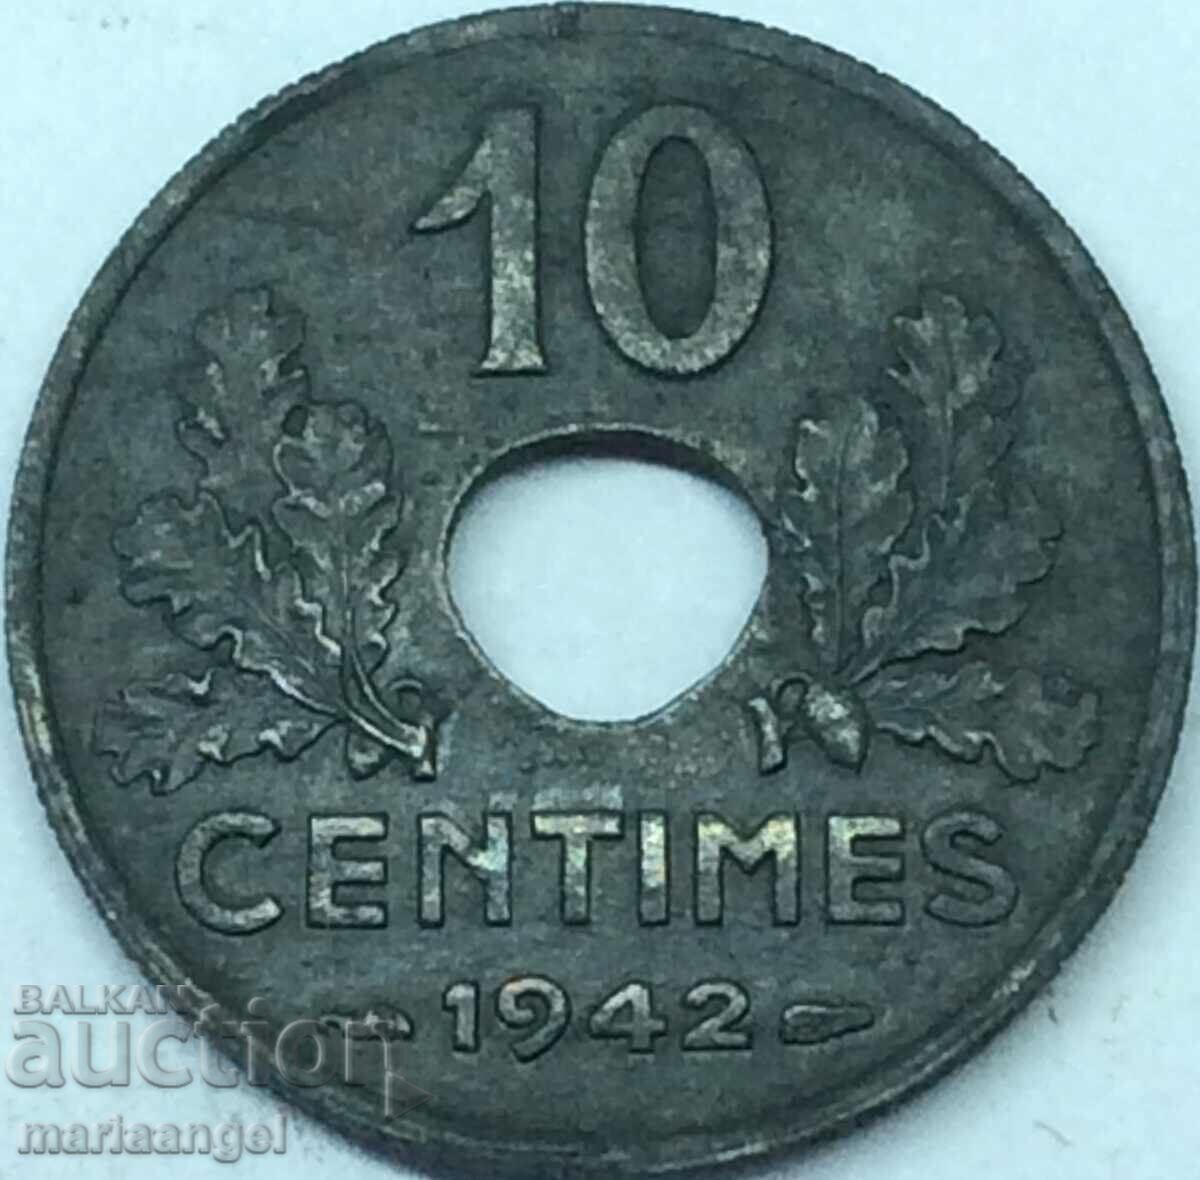 Franta 1942 10 centimes zinc